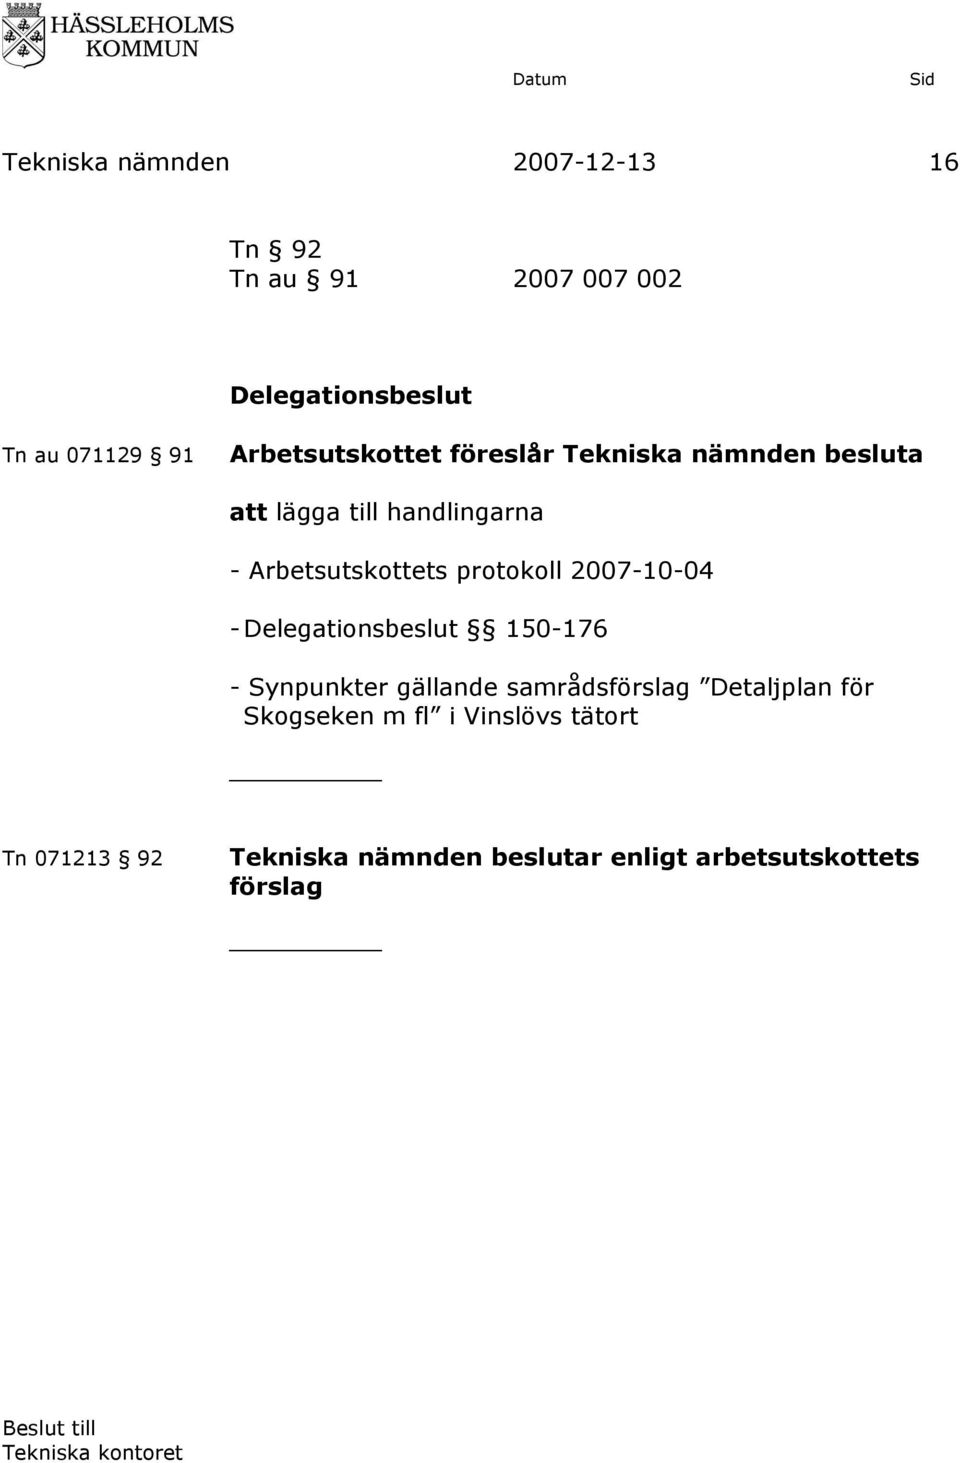 Arbetsutskottets protokoll 2007-10-04 - Delegationsbeslut 150-176 -